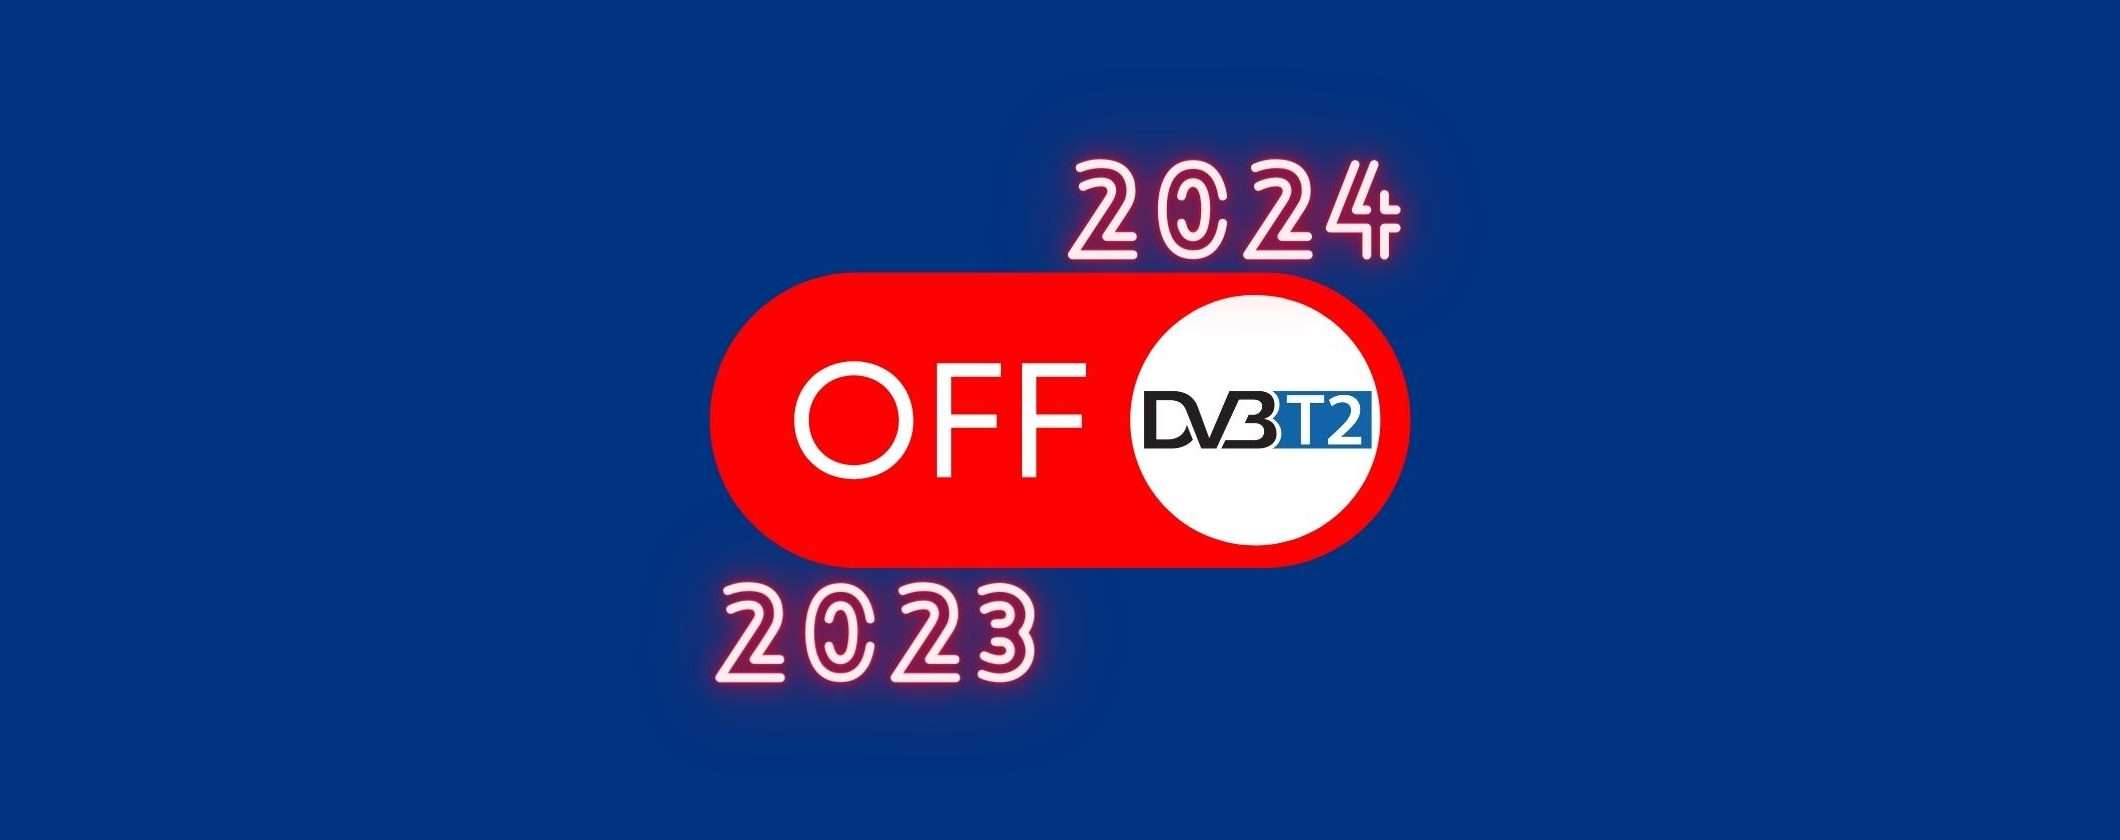 Digitale terrestre: lo switch off potrebbe non arrivare entro il 2023